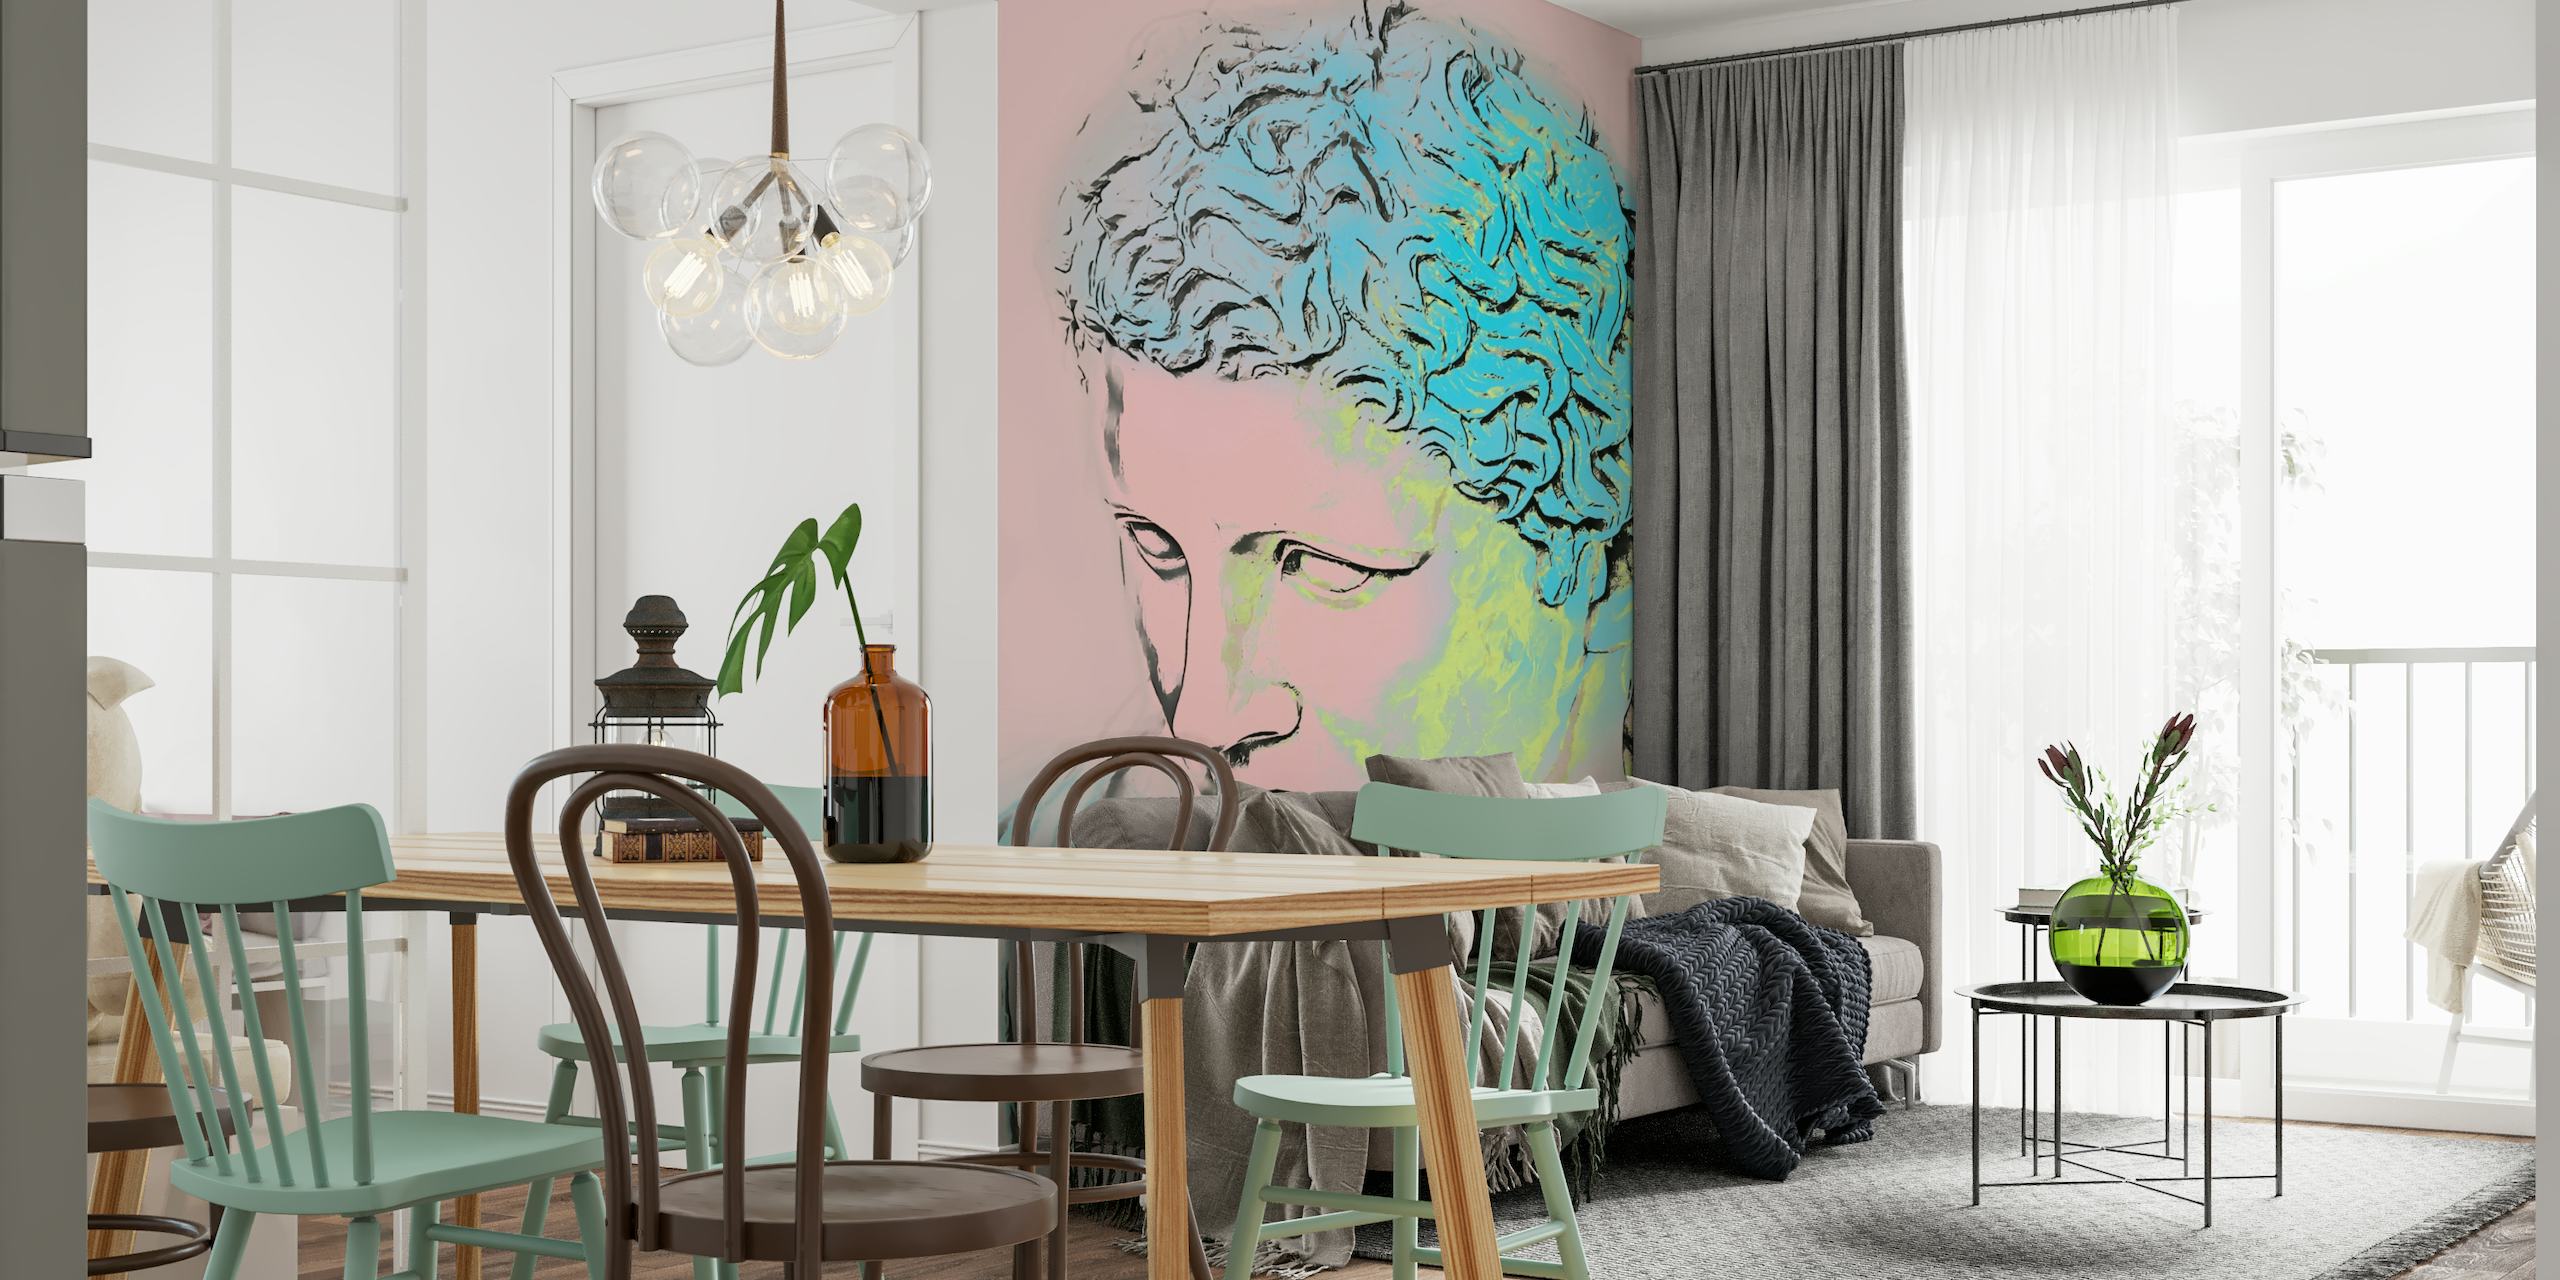 Retrato estilizado de neo art déco com fotomural vinílico de parede com paleta de cores neon